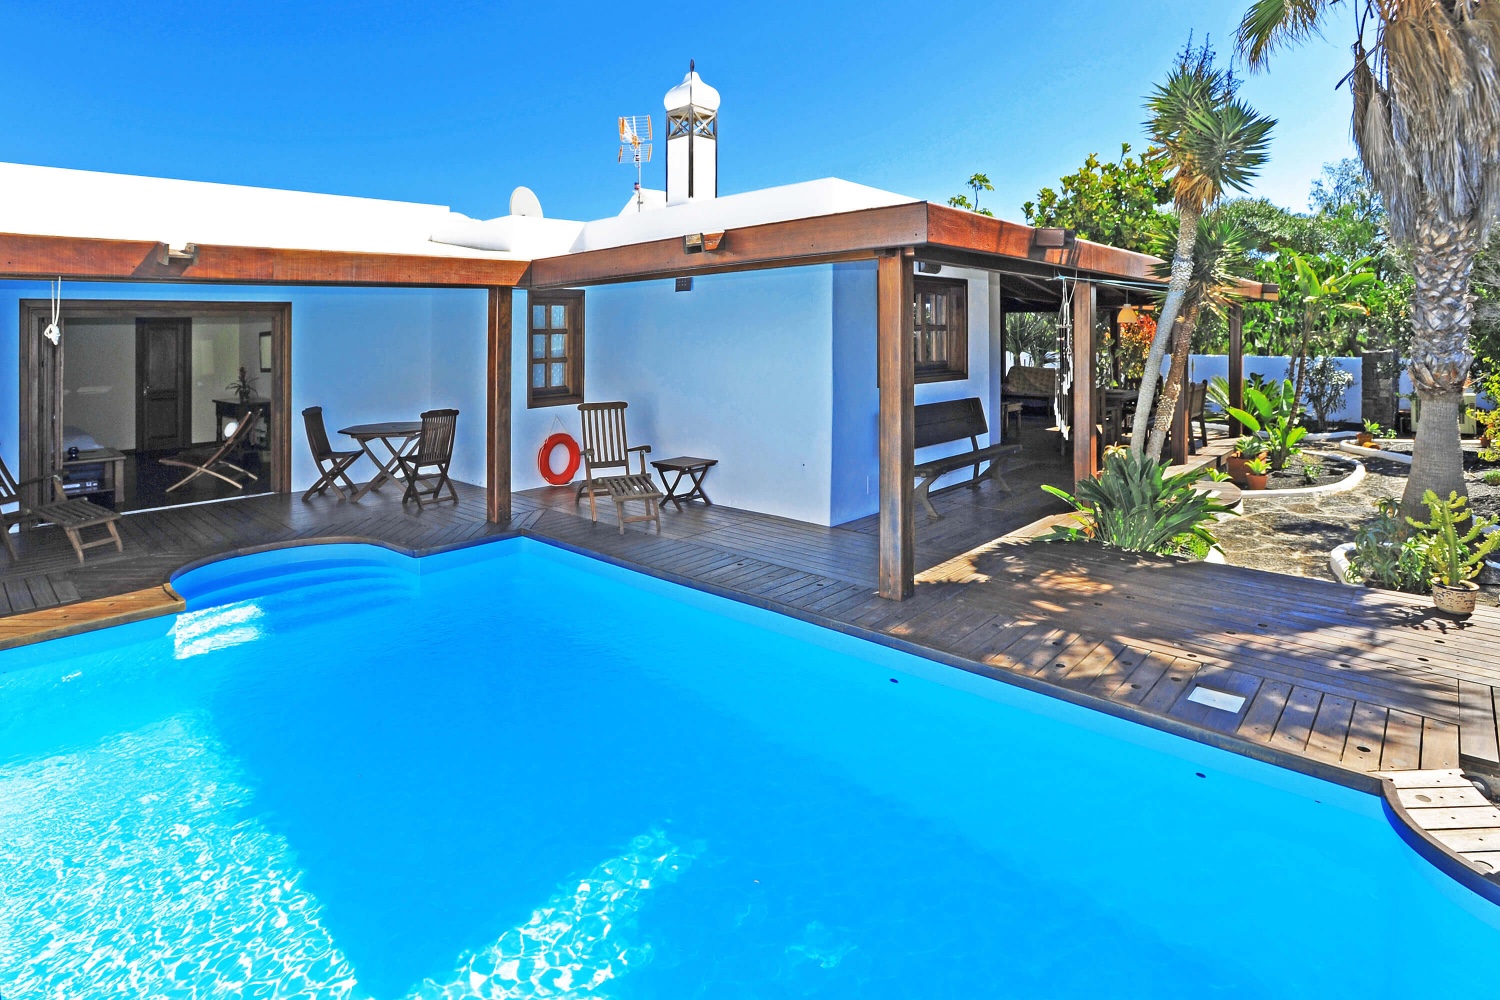 Schöne und rustikale Villa mit Garten und privatem Pool in der Nähe von Strand und Golfplatz in Costa Teguise